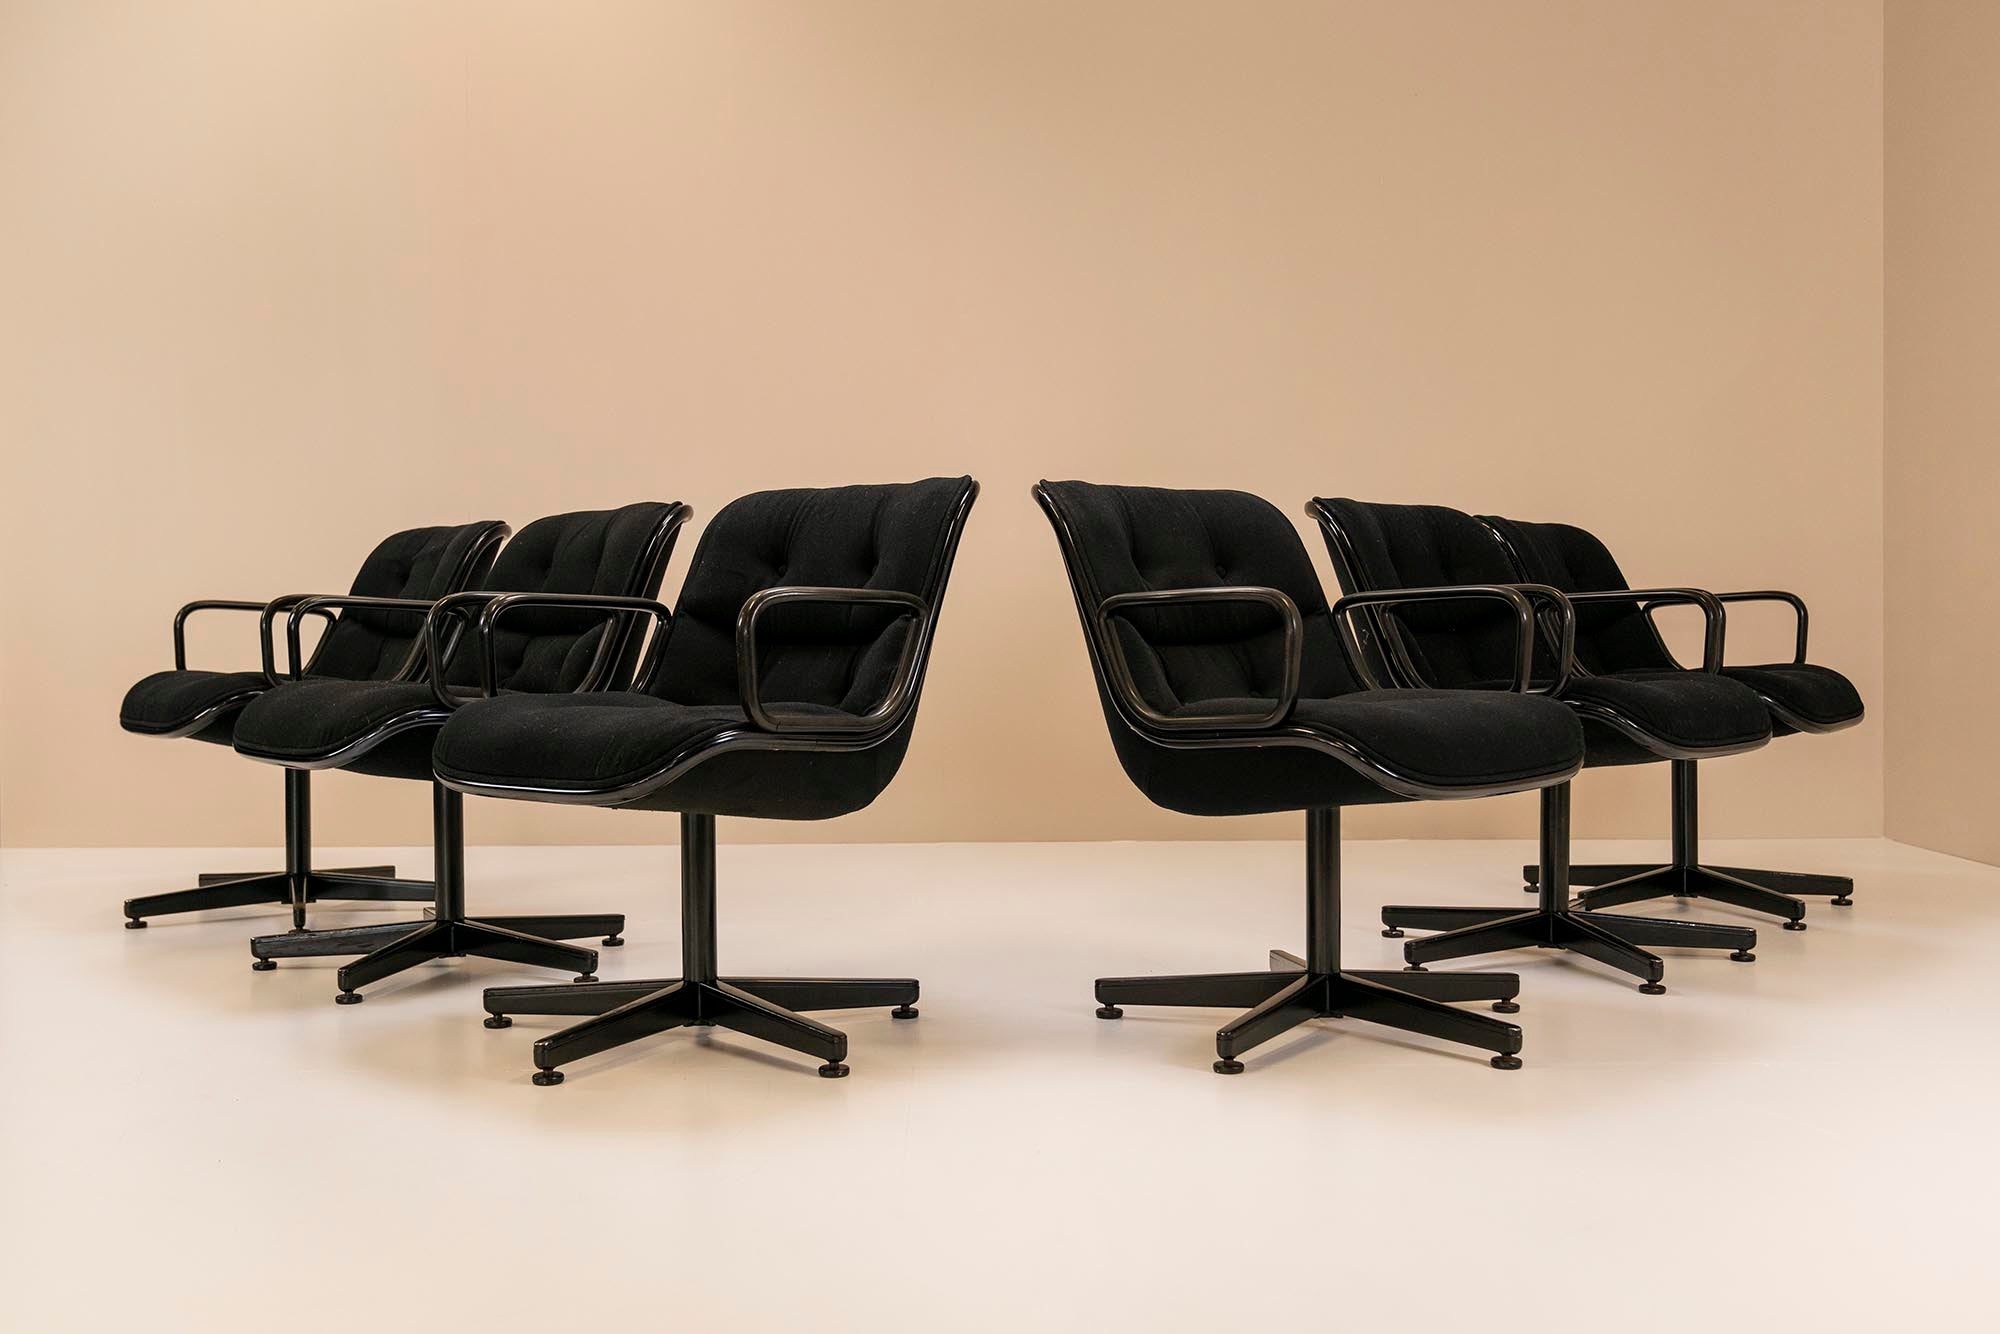 Diese 12 Chefsessel sind ein echter Klassiker aus der berühmten Manufaktur Knoll, der 1963 von dem amerikanischen Designer Charles Pollock entworfen wurde. Ein absoluter Meister in der Kreation von Büromöbeln, die vor allem in Chefzimmern auf der